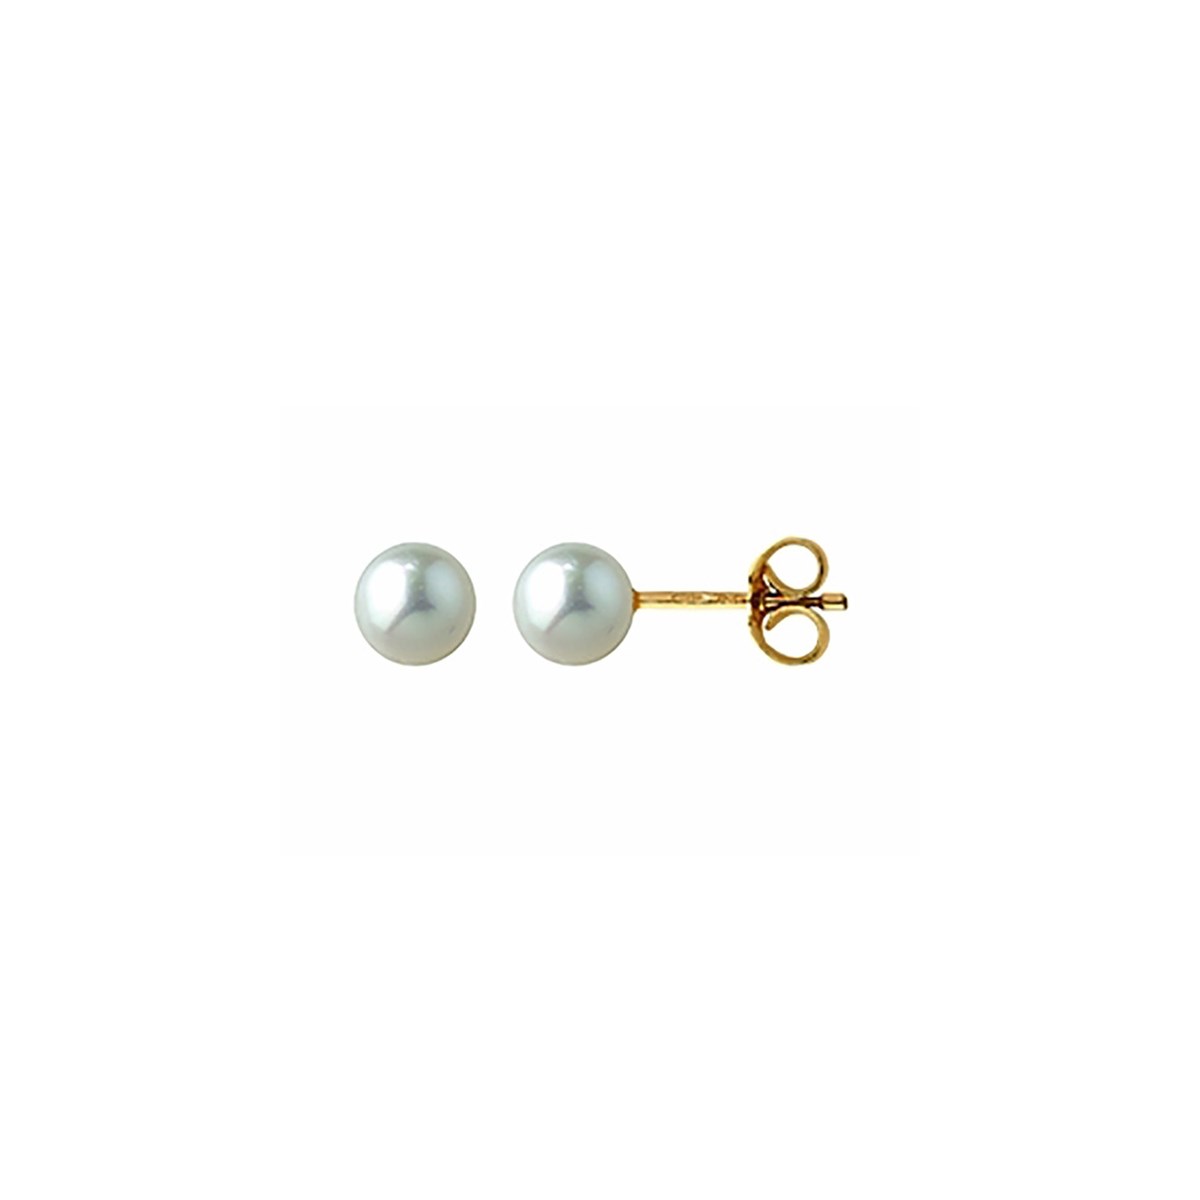 Boucles d'oreilles Brillaxis perles de cultures or
4,5/5 mm